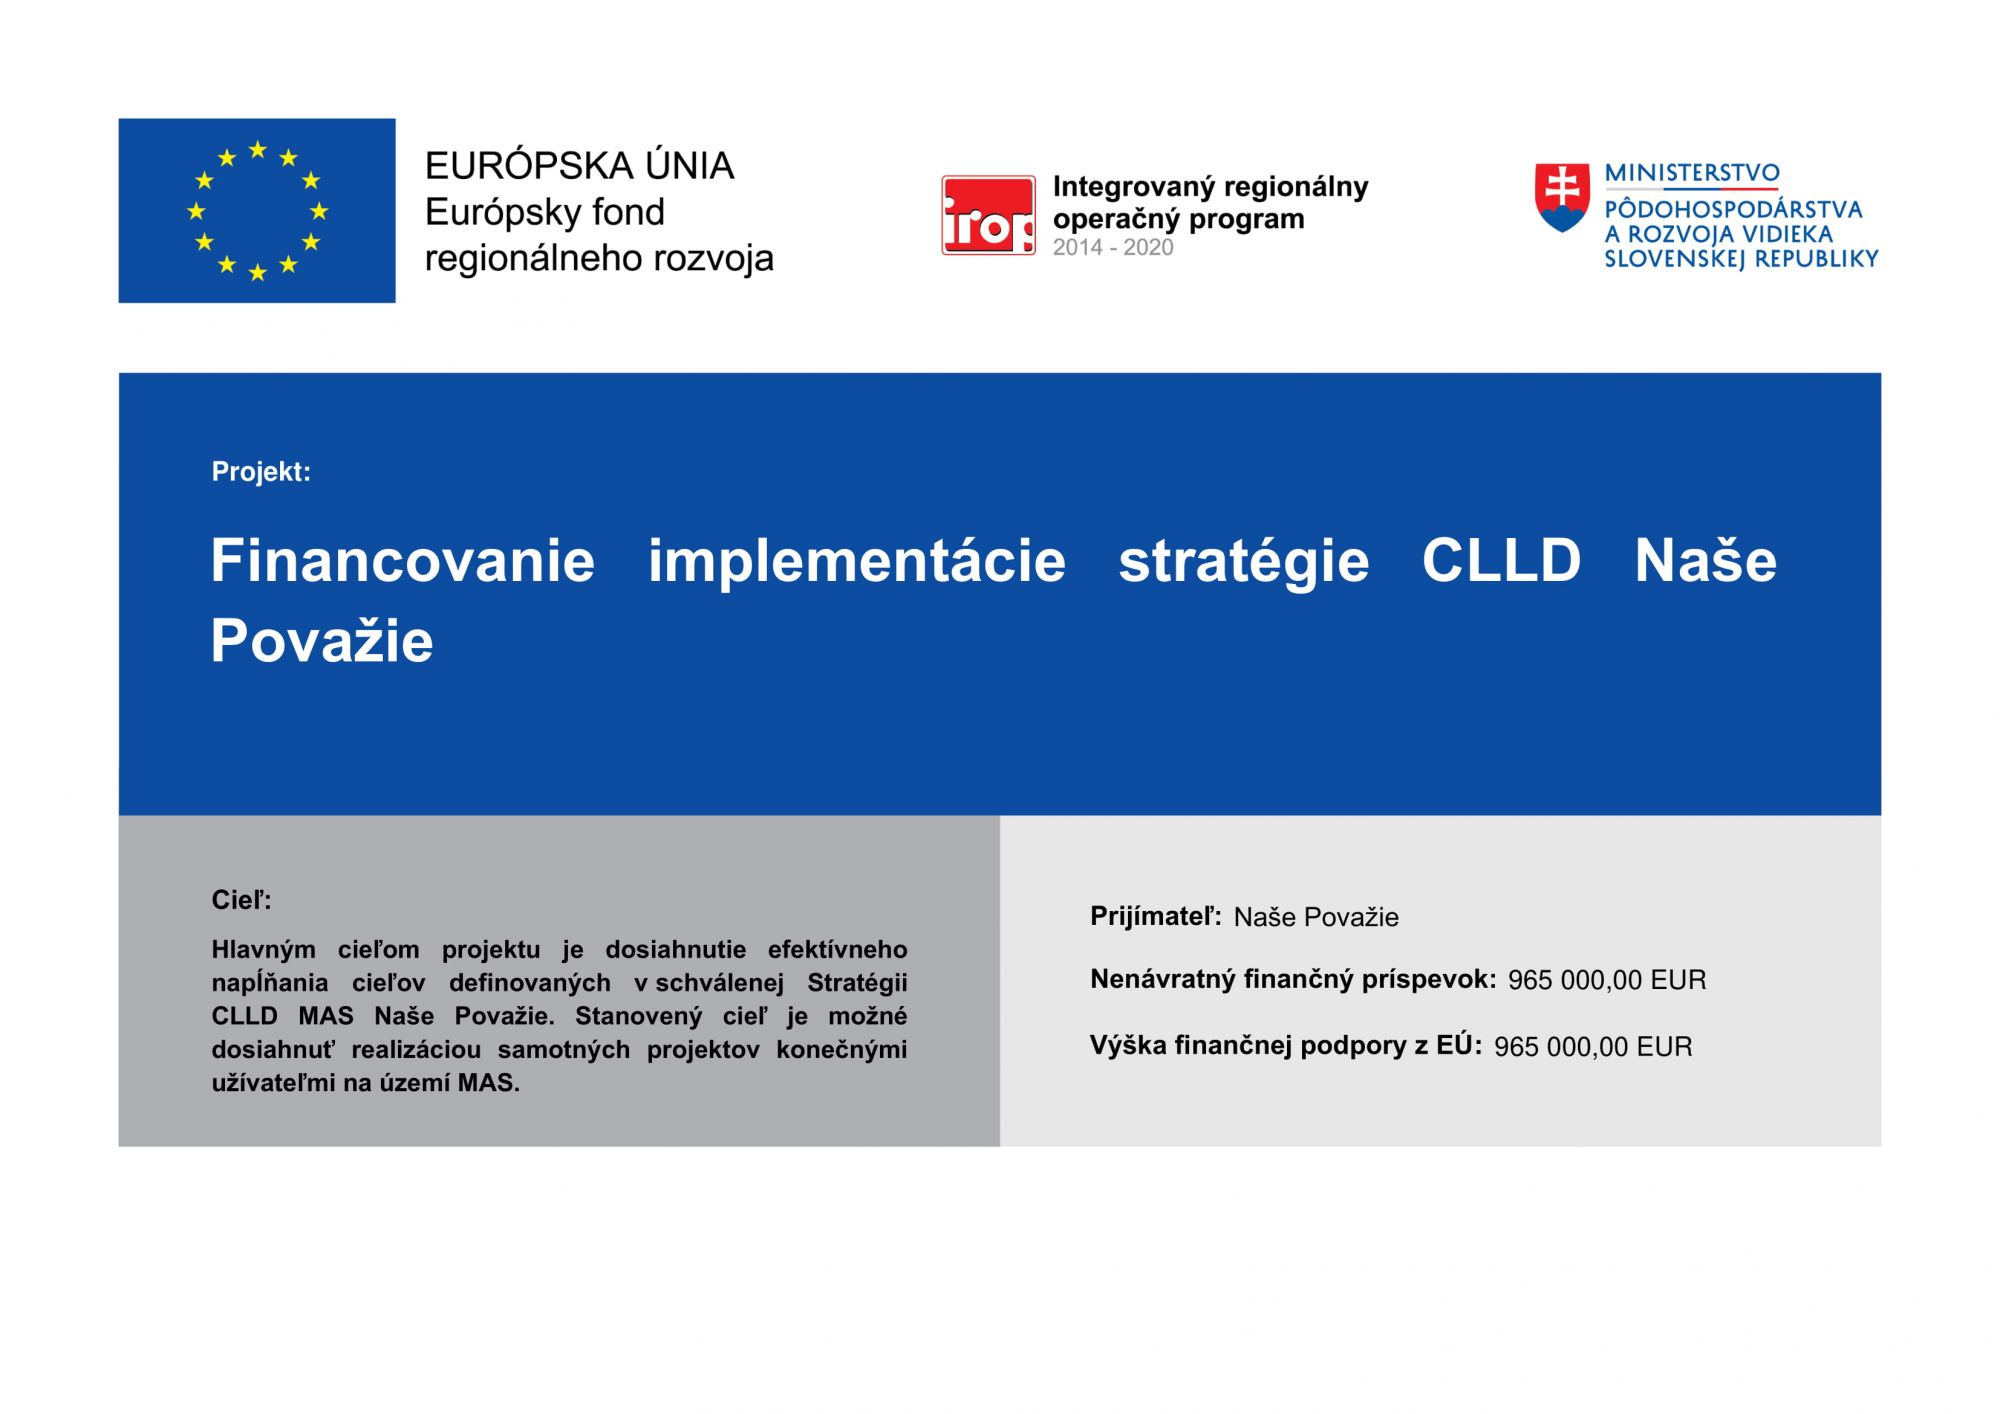 Financovanie implementácie stratégie CLLD Naše Považie